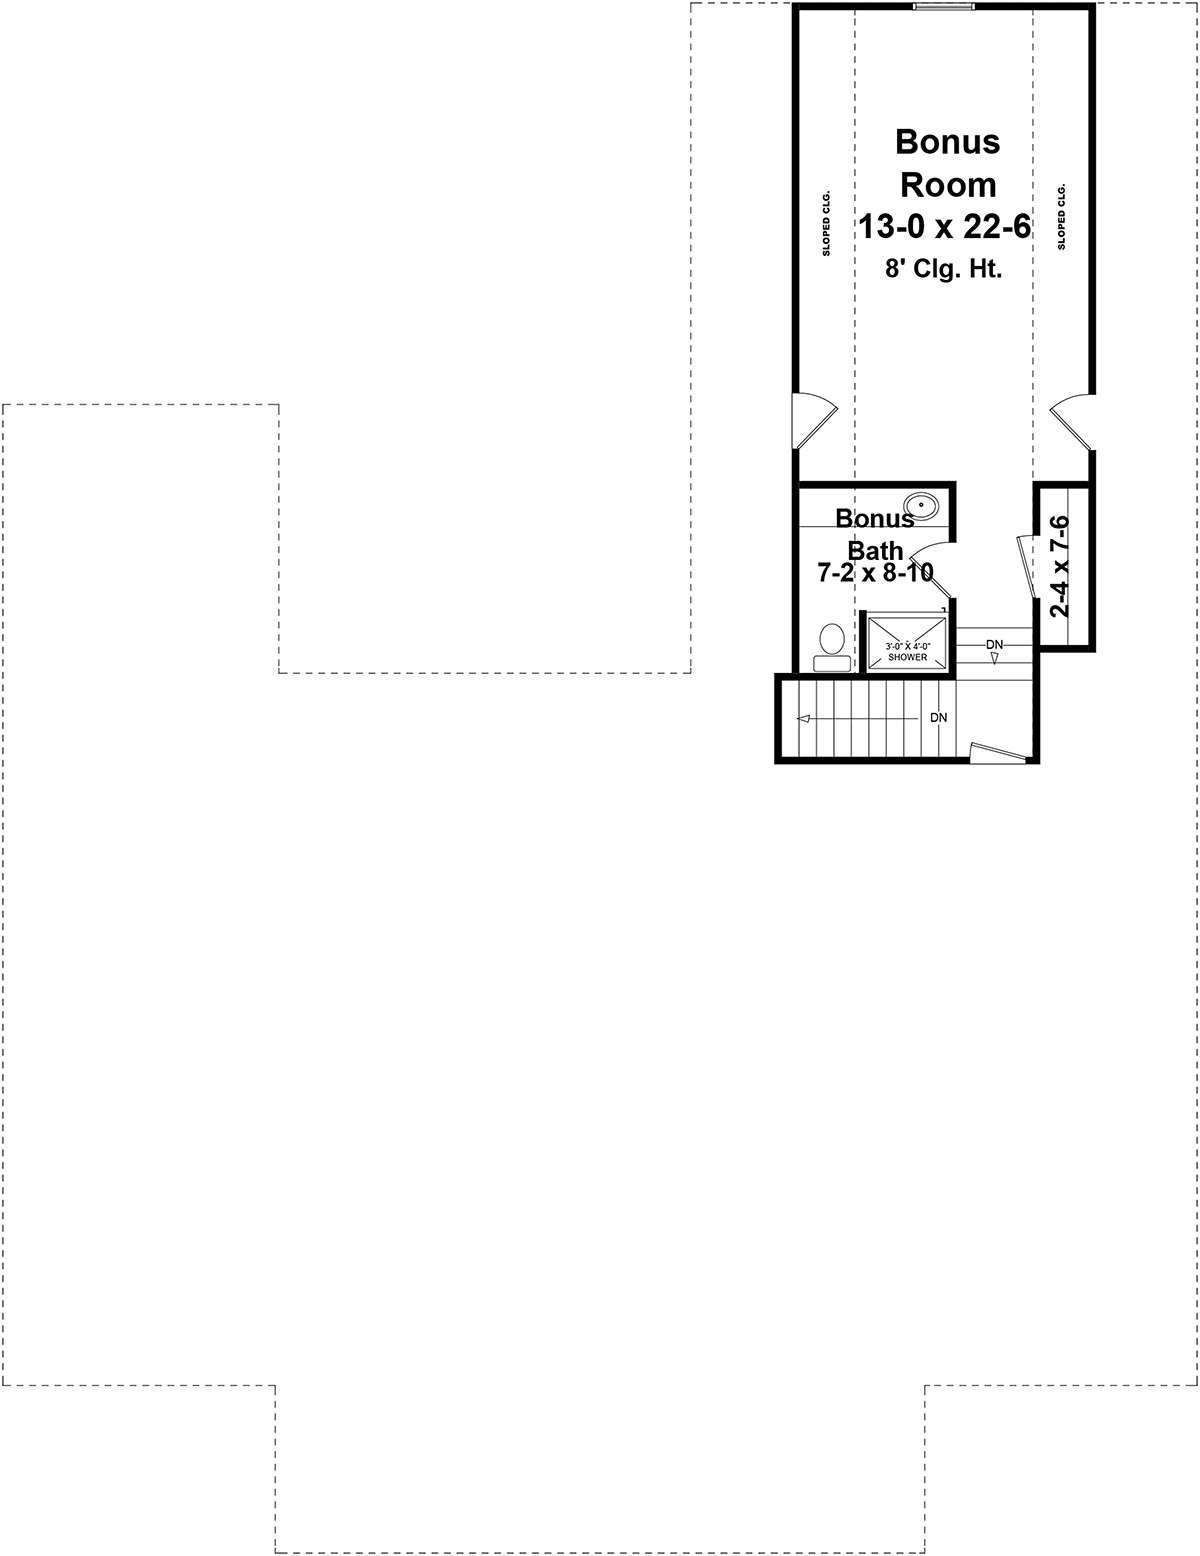 HPG-2107-1 bonus room floor plans